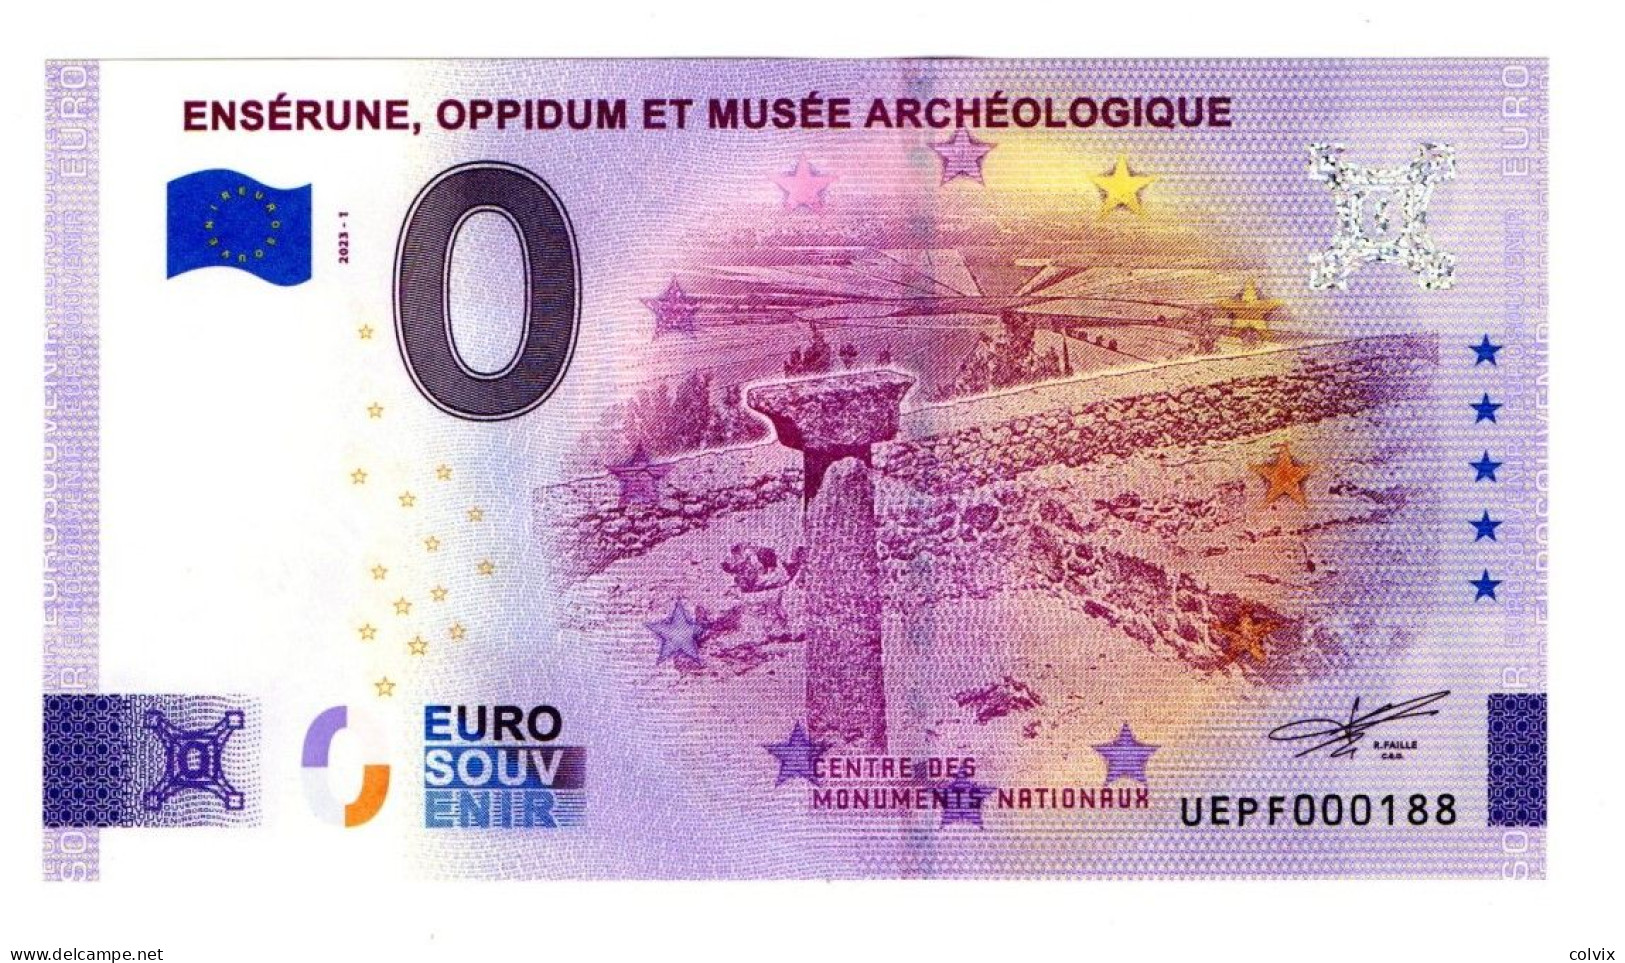 2023-1 FRANCE BILLET TOURISTIQUE 0 EURO SOUVENIR N° UEPF000188 ENSERUNE OPPIDUM ET MUSEE ARCHEOLOGIQUE - Private Proofs / Unofficial